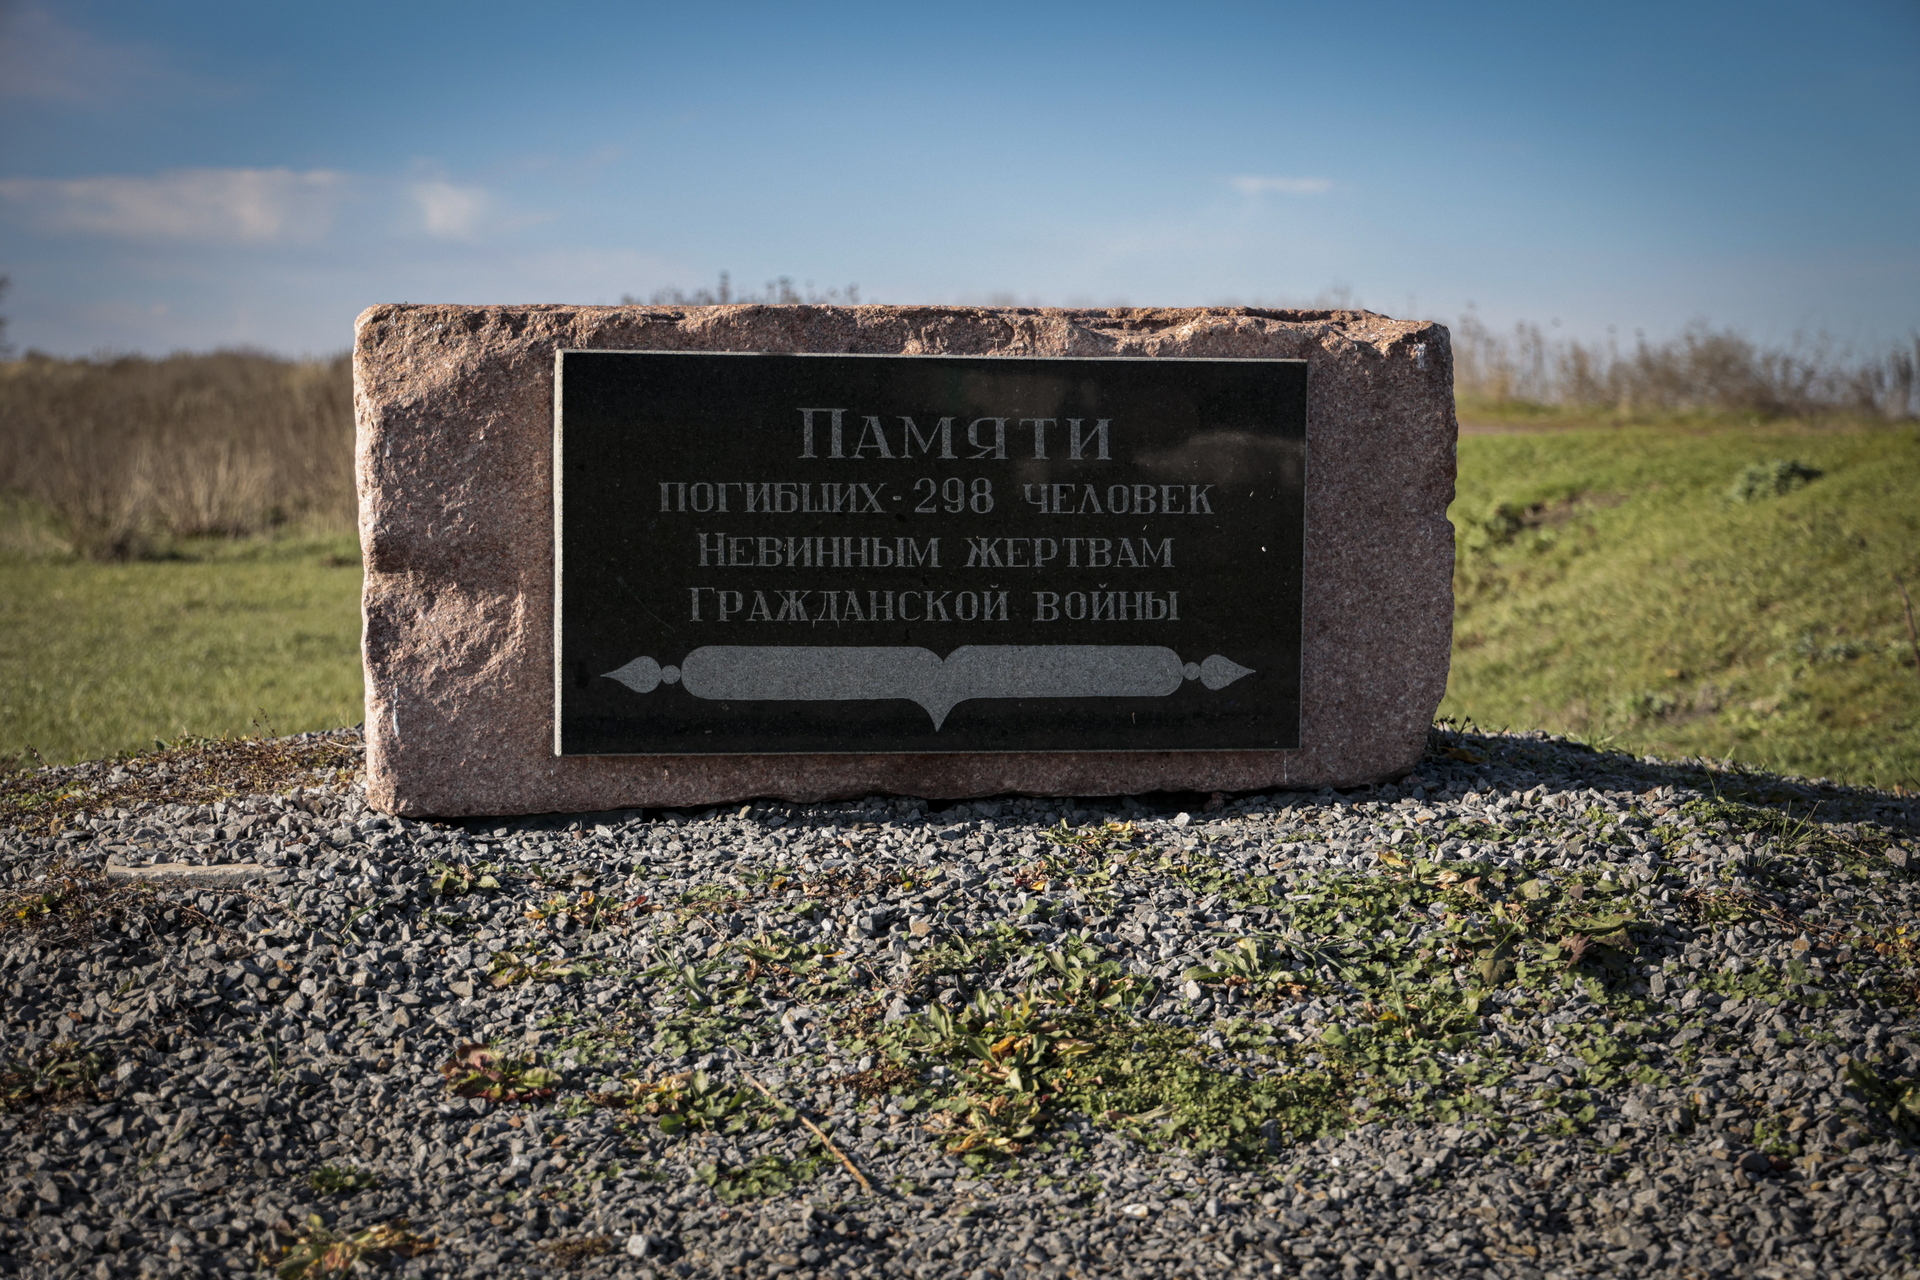 Vladmir Putin autorizó el misil que derribó el vuelo MH17 en 2014 al este de Ucrania. Noticias en tiempo real